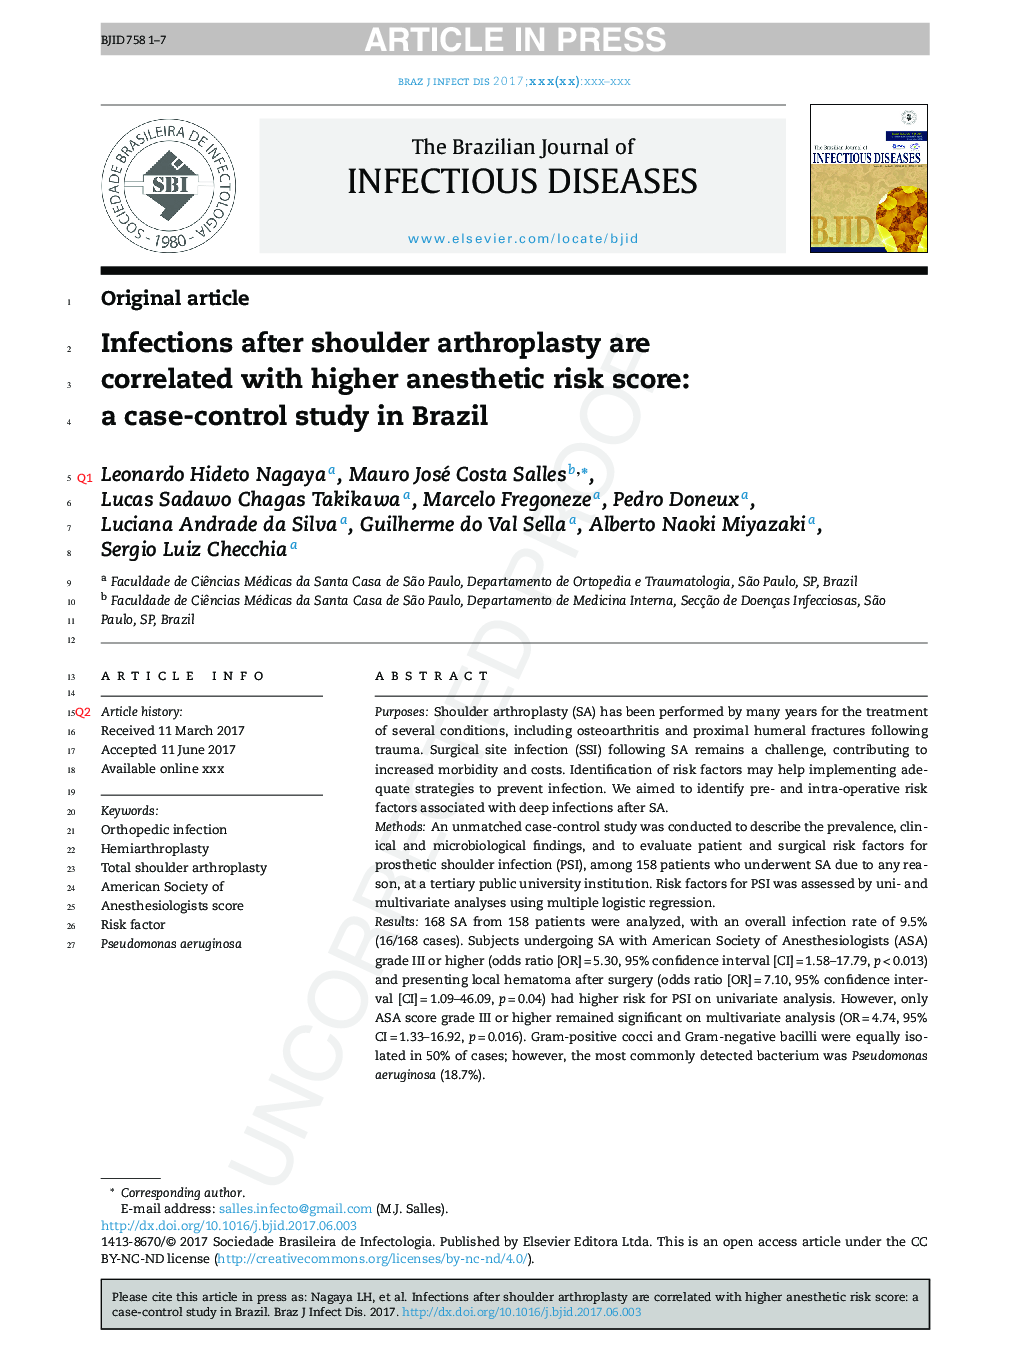 عفونت بعد از آرتروپلاستی شانه با نمره ریسک بالینی بیهوشی رابطه دارد: یک مطالعه مورد-شاهد در برزیل 